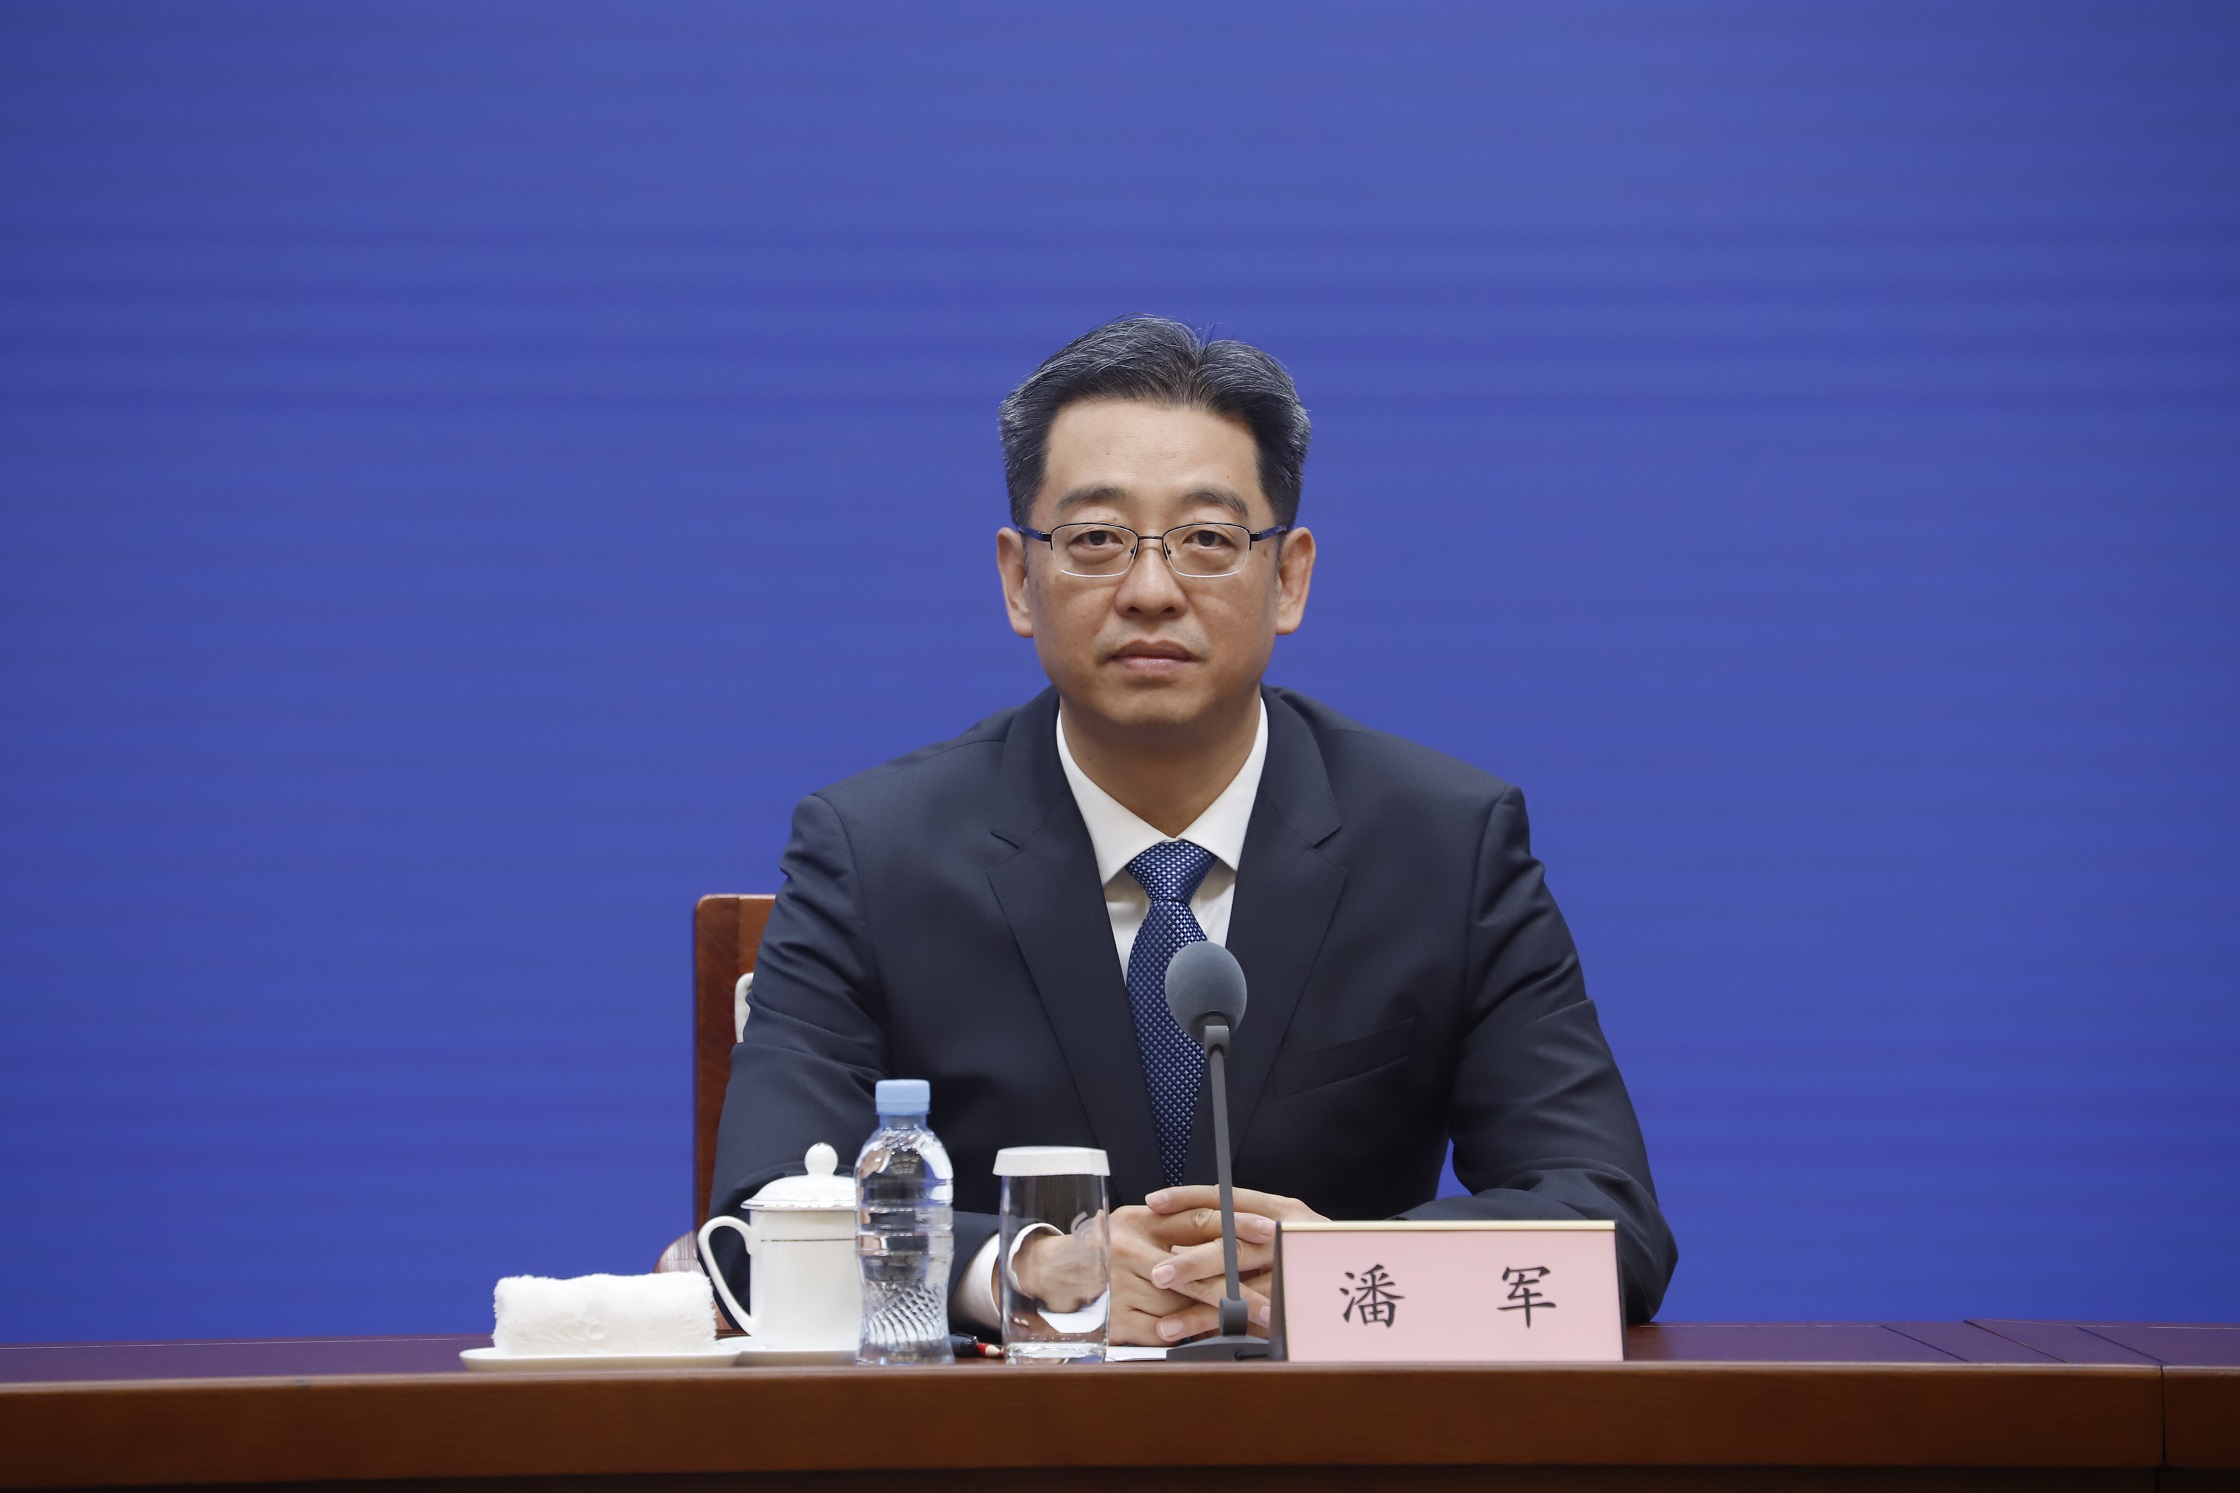 贵州铜仁市副市长、市公安局局长潘攀已赴京挂职，治下刑案连年下降 | 极目新闻